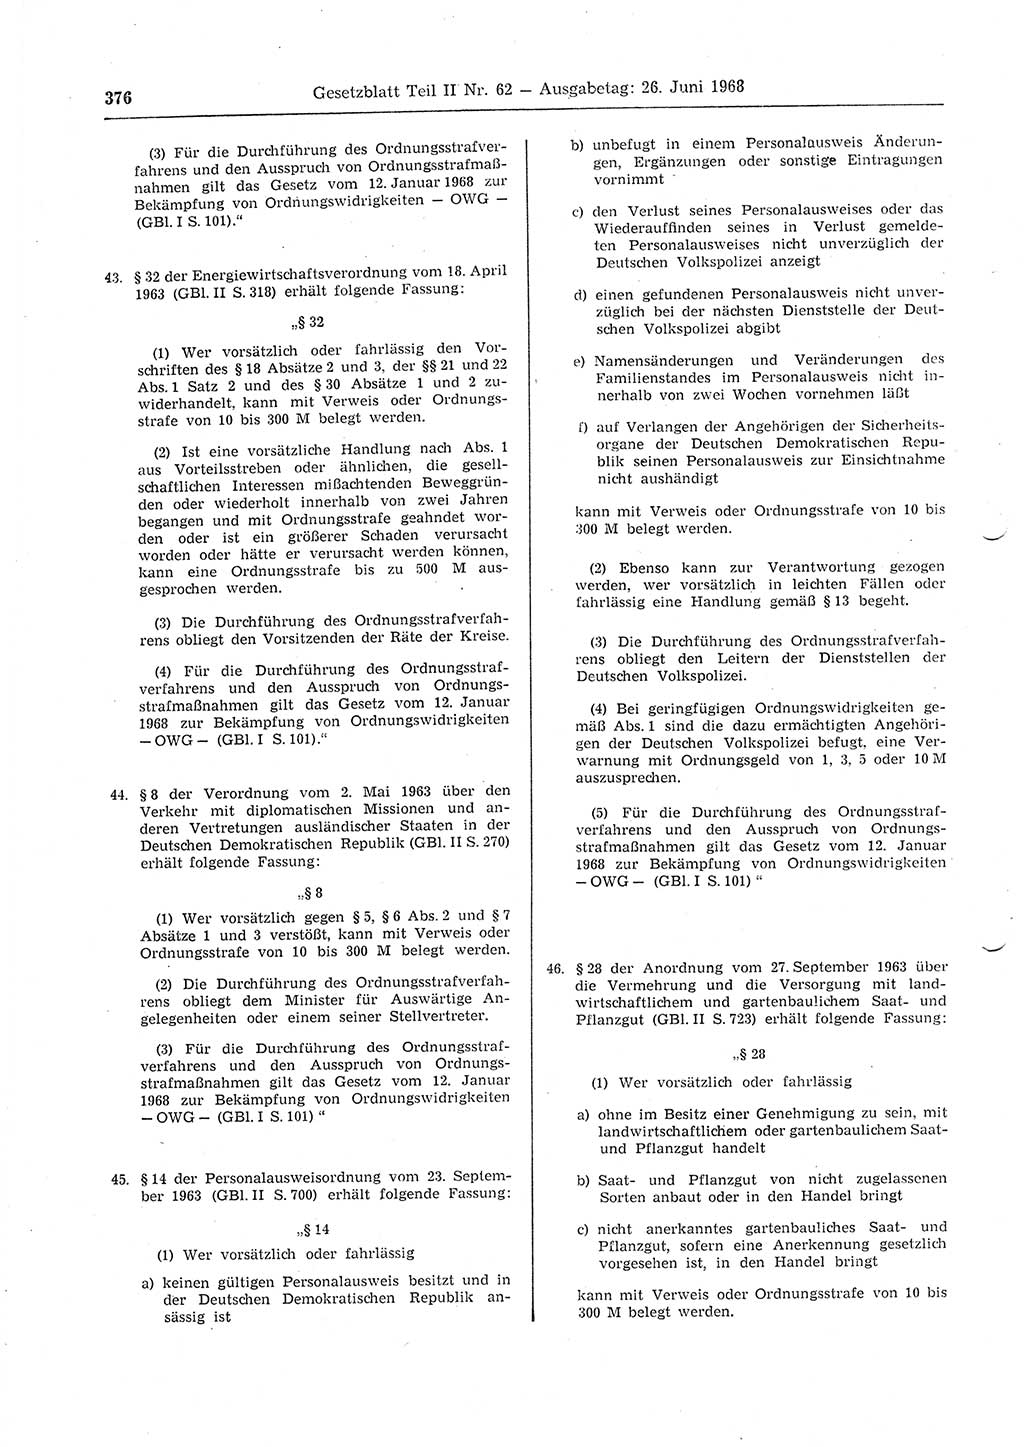 Gesetzblatt (GBl.) der Deutschen Demokratischen Republik (DDR) Teil ⅠⅠ 1968, Seite 376 (GBl. DDR ⅠⅠ 1968, S. 376)